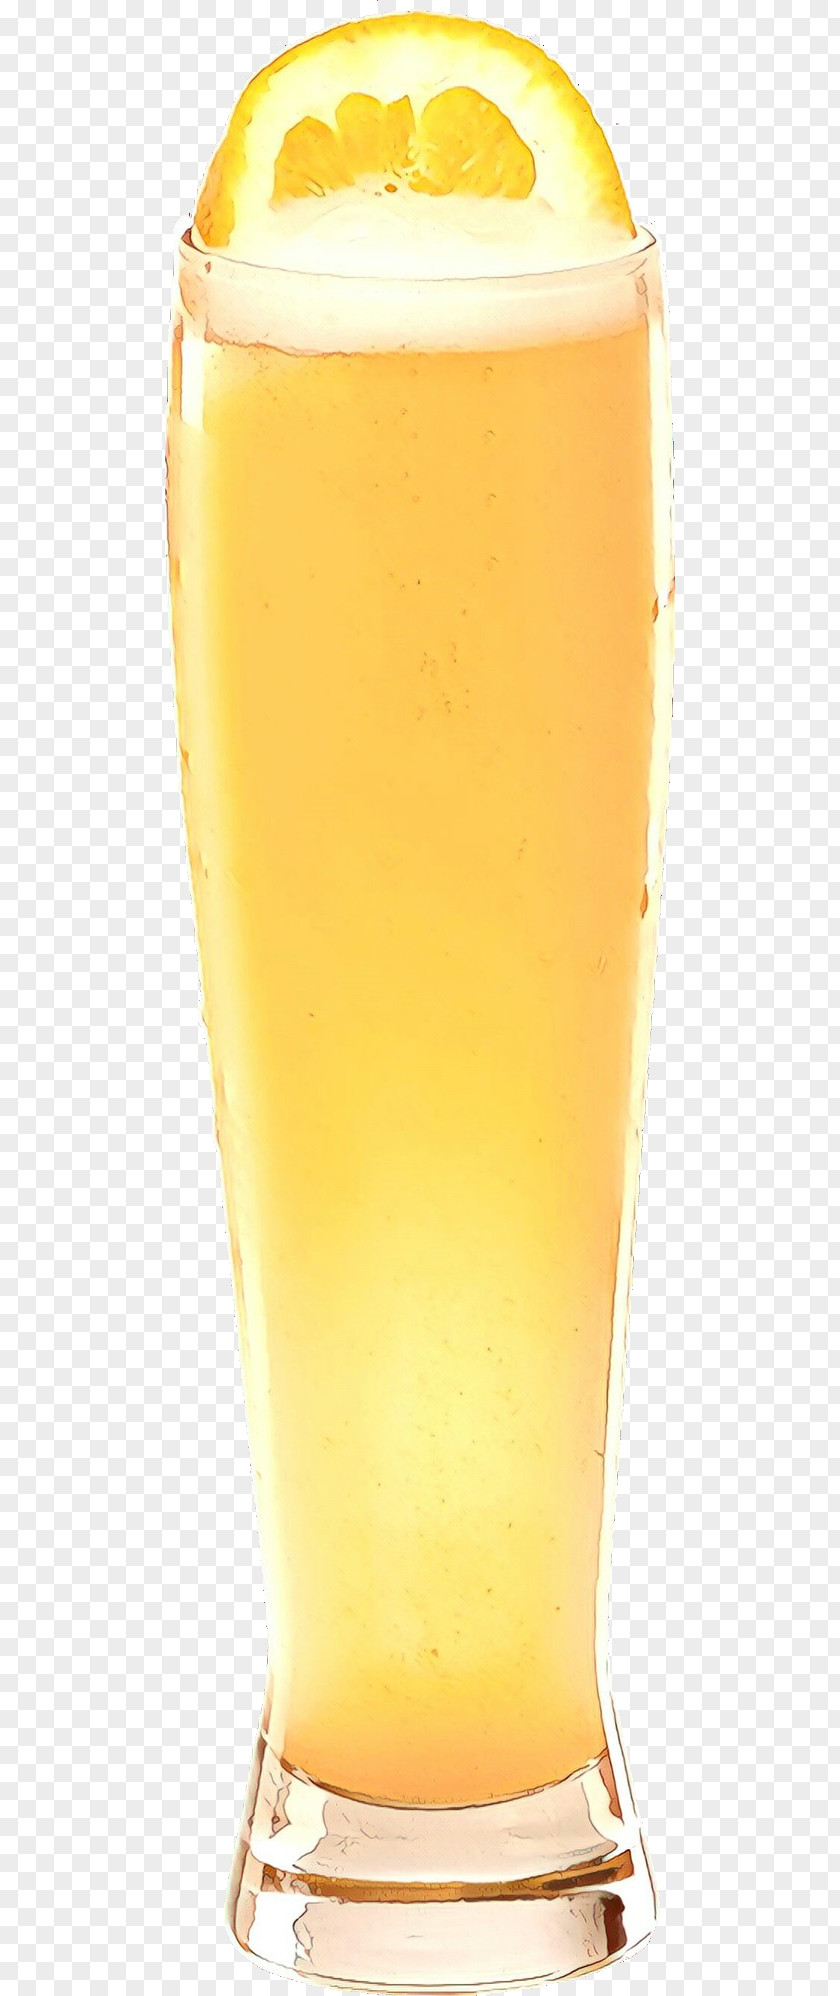 Beer Fizz Drink Yellow Juice Pint Glass PNG